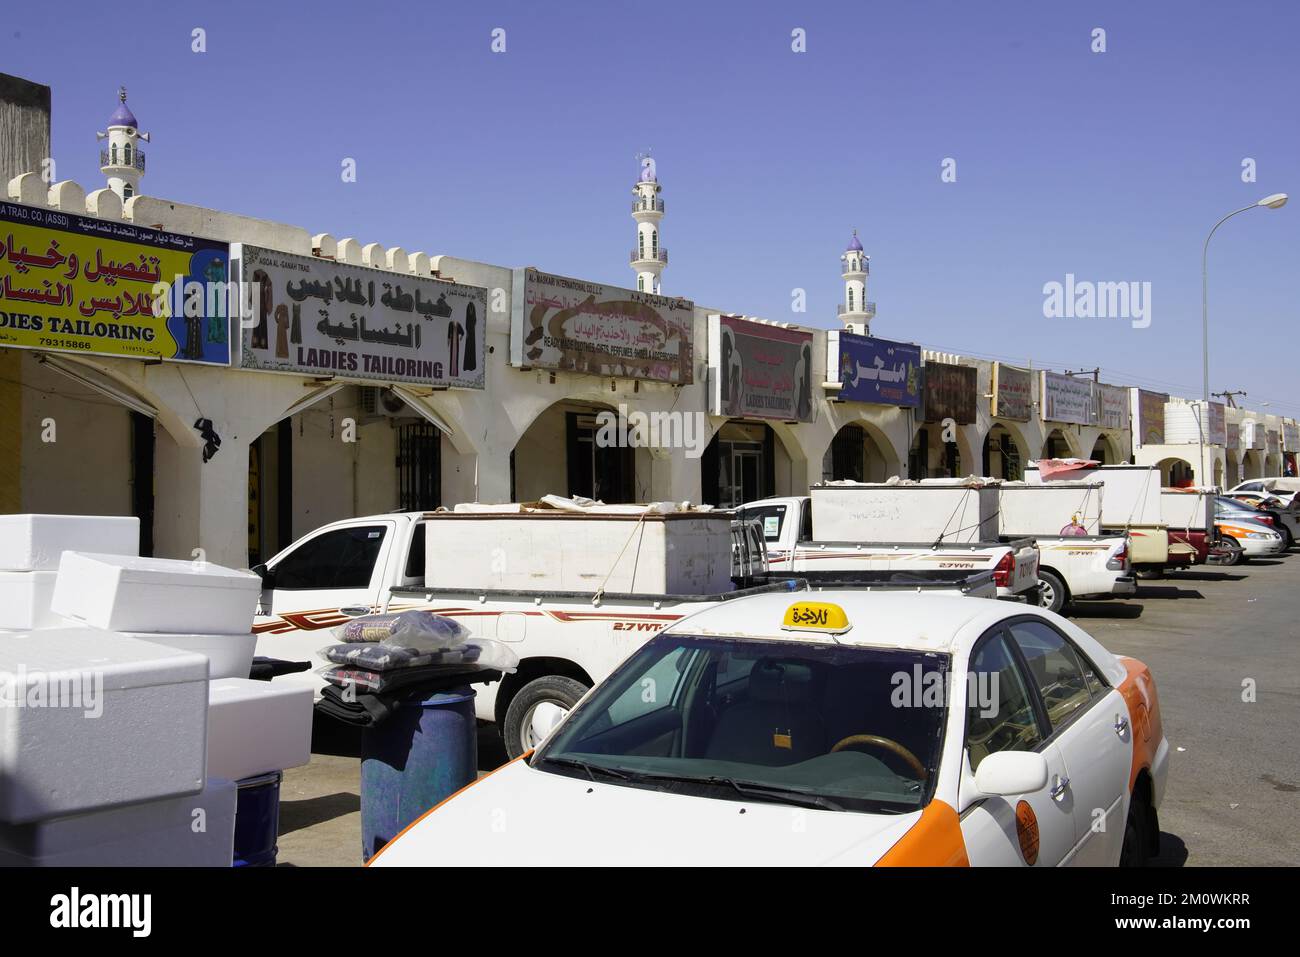 Negozi di sarto in piazza del mercato nella piccola città nella regione di Hajar, Sultanato di Oman. Foto Stock